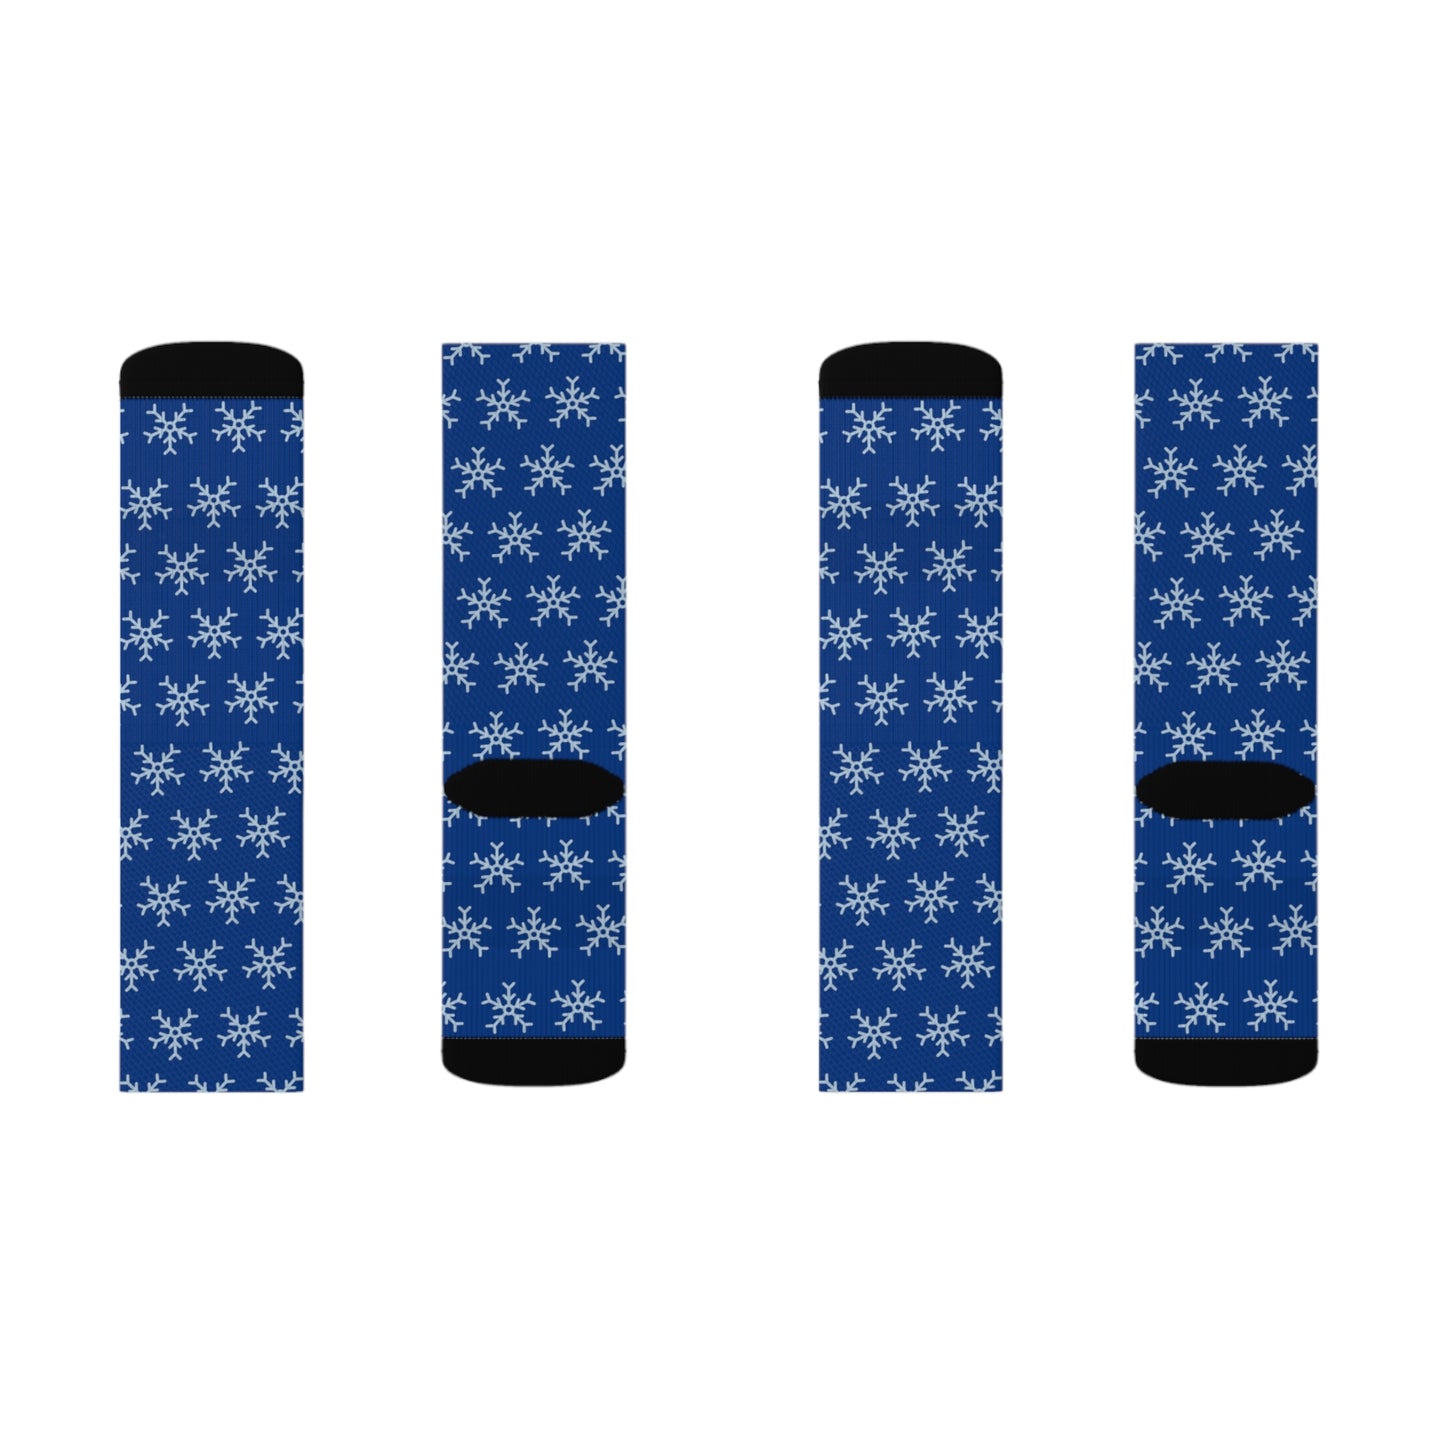 Blue Tube Socks: 3 sizes; Polyester blend; Snowflake design